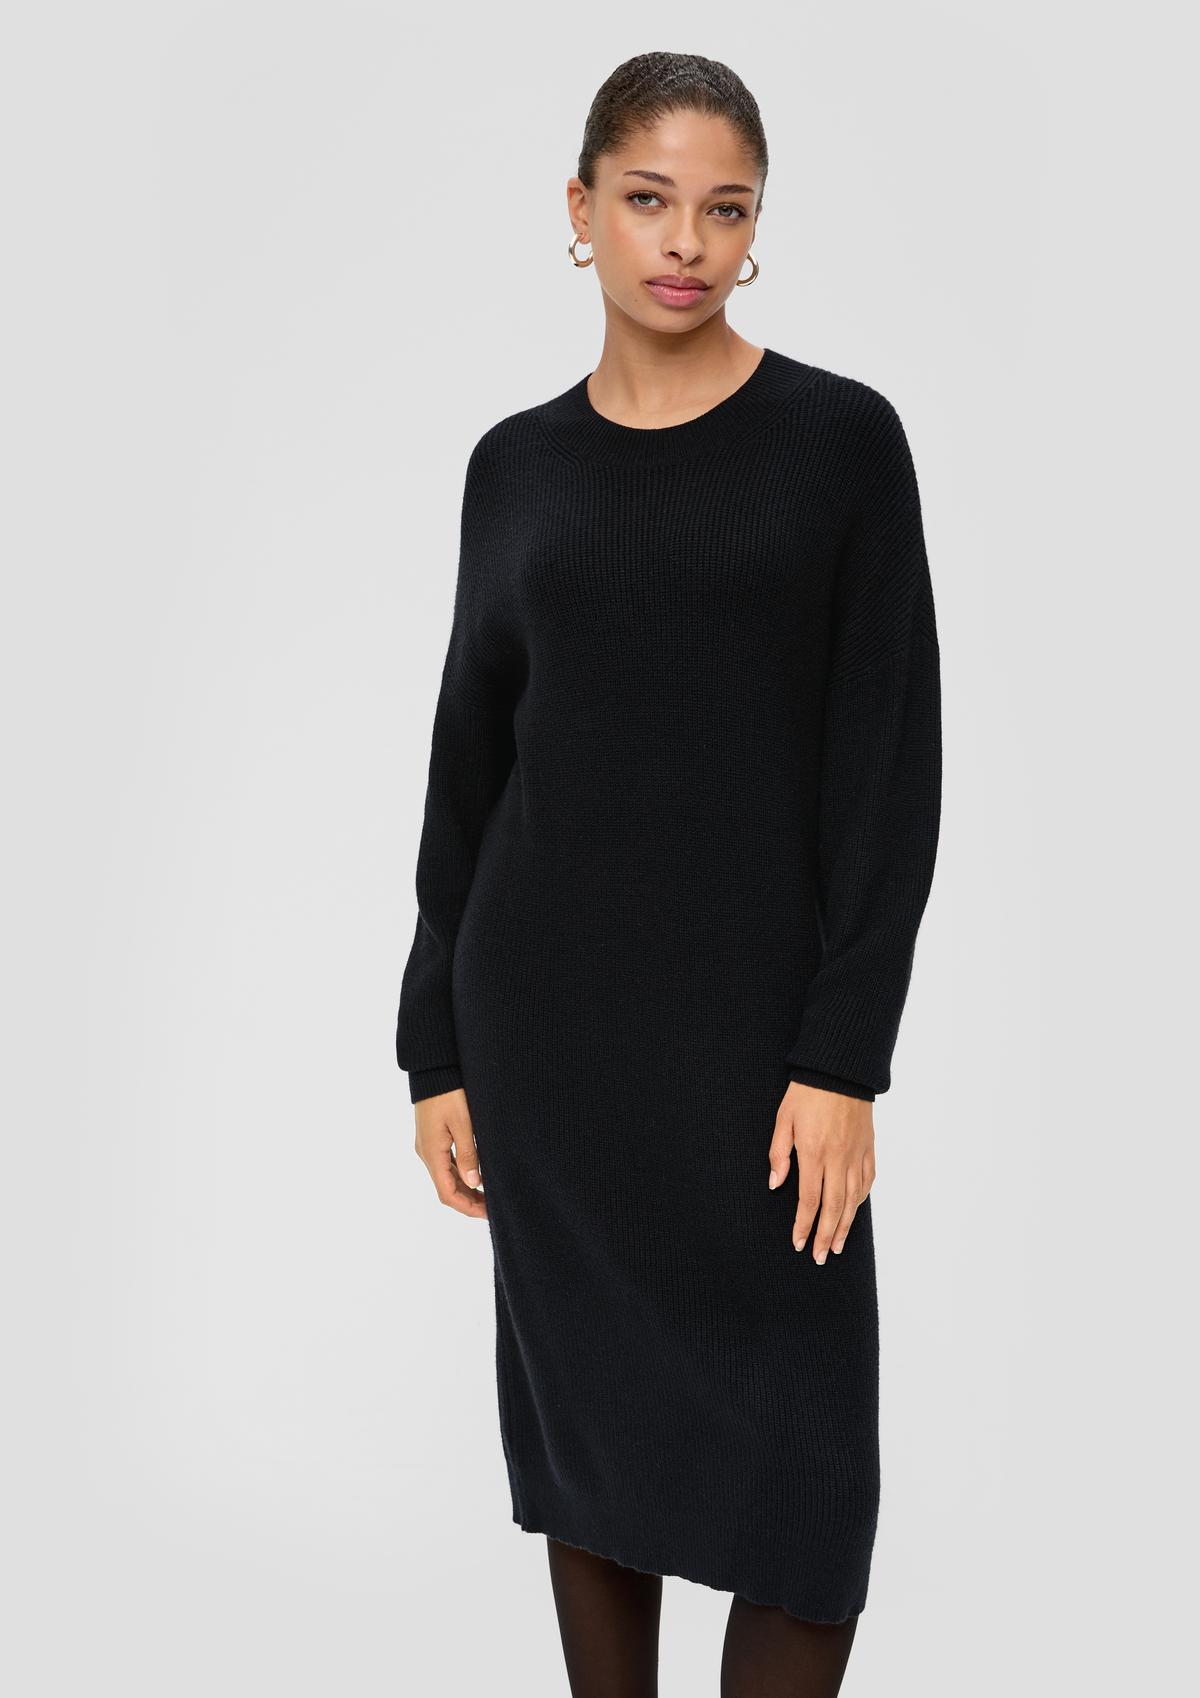 Fine knit jumper dress - black